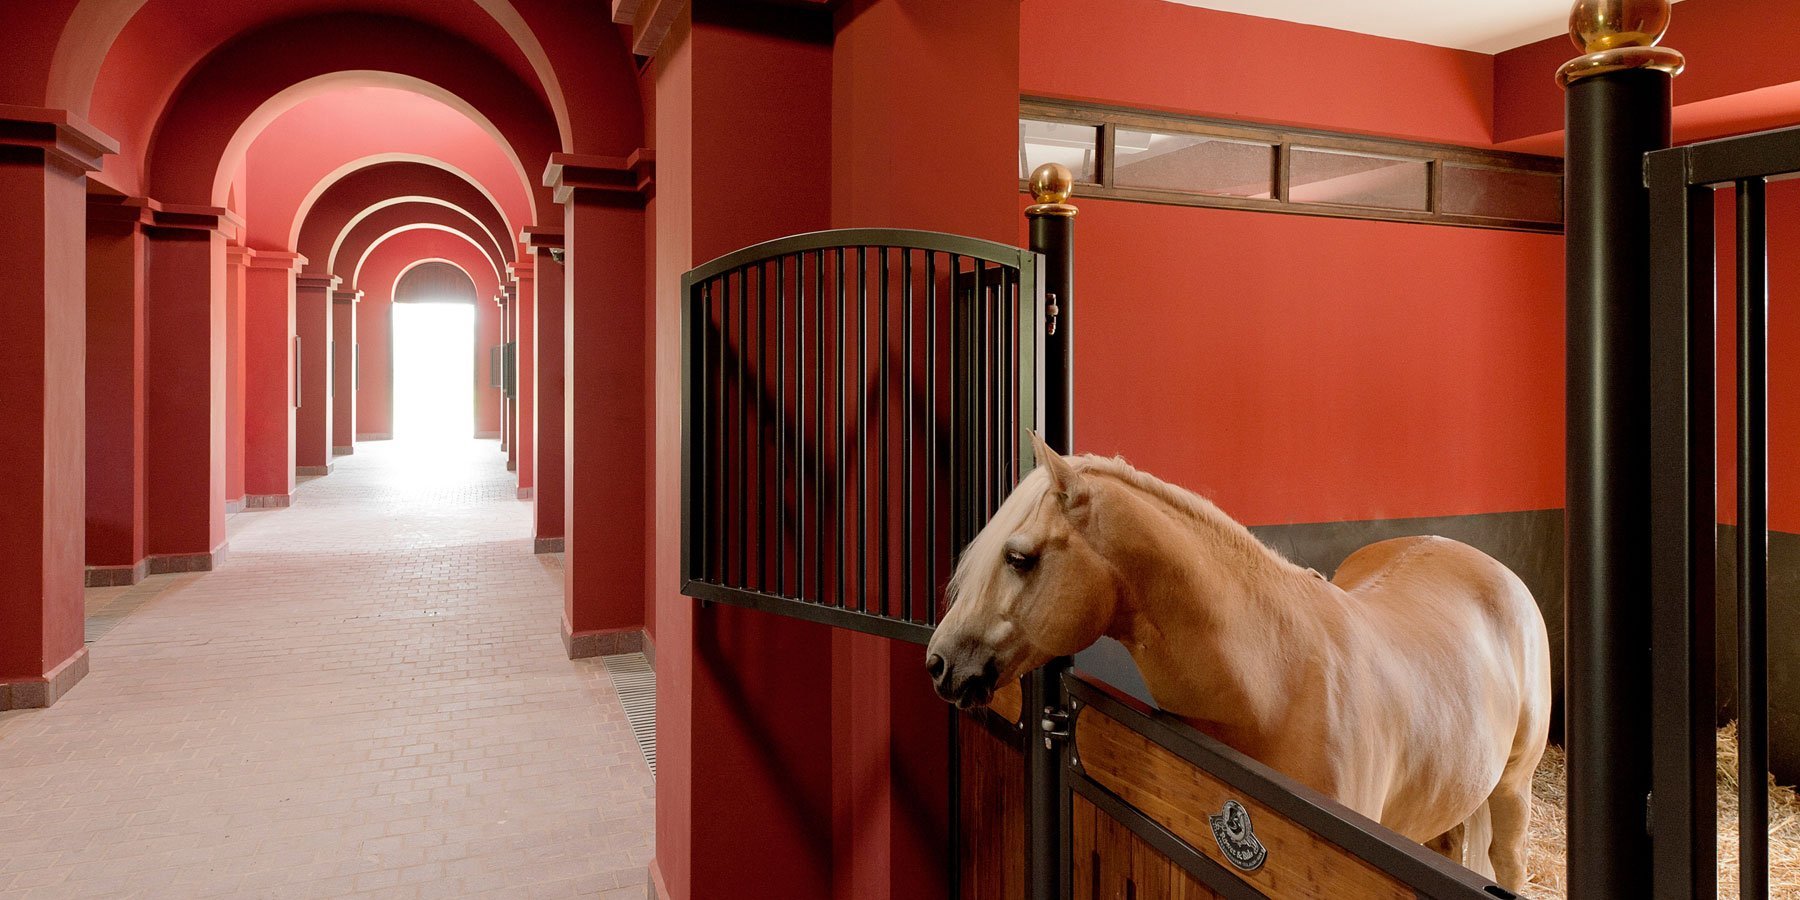 Помещения конюшни. Конюшня в Абу Даби. Конюшня в Дубае. Музей конюшня в Шанхае. Королевские конюшни в Стокгольме.